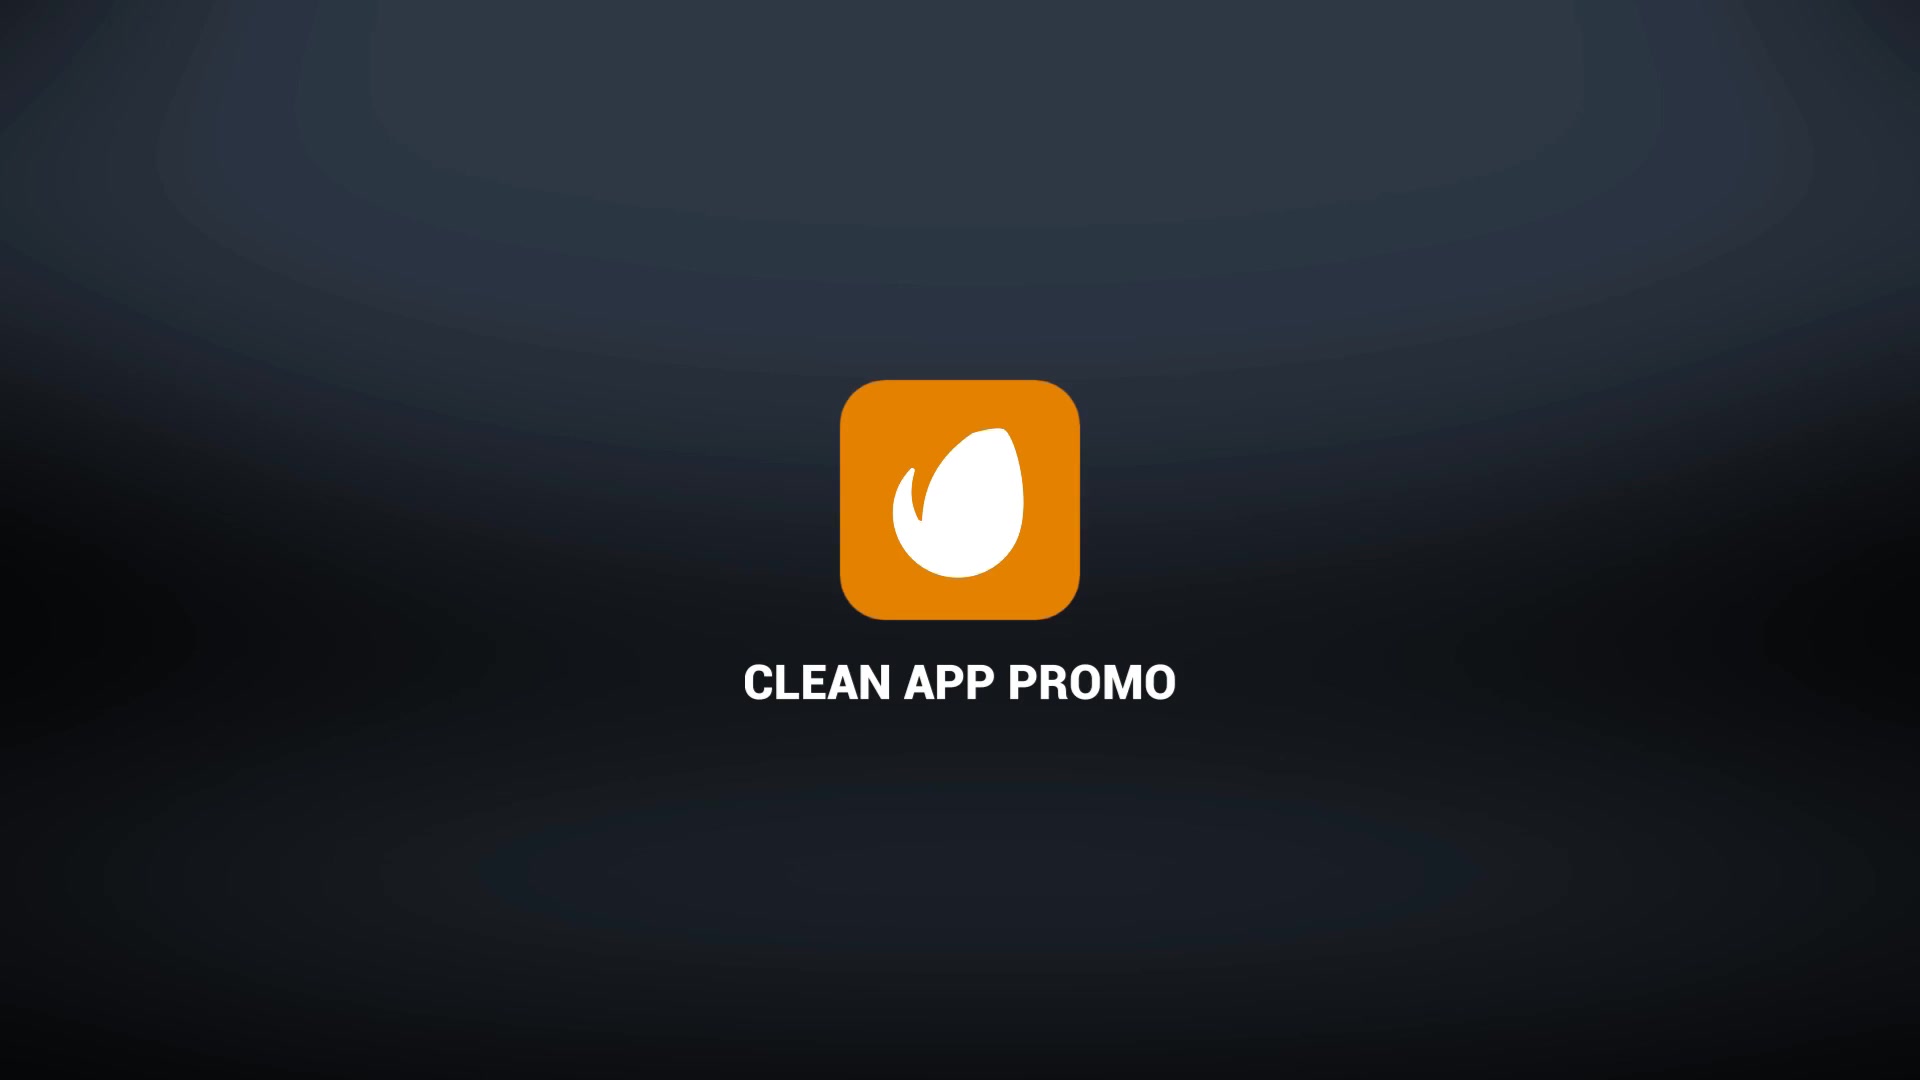 Clean App Promo Premiere Videohive 25961833 Premiere Pro Image 13